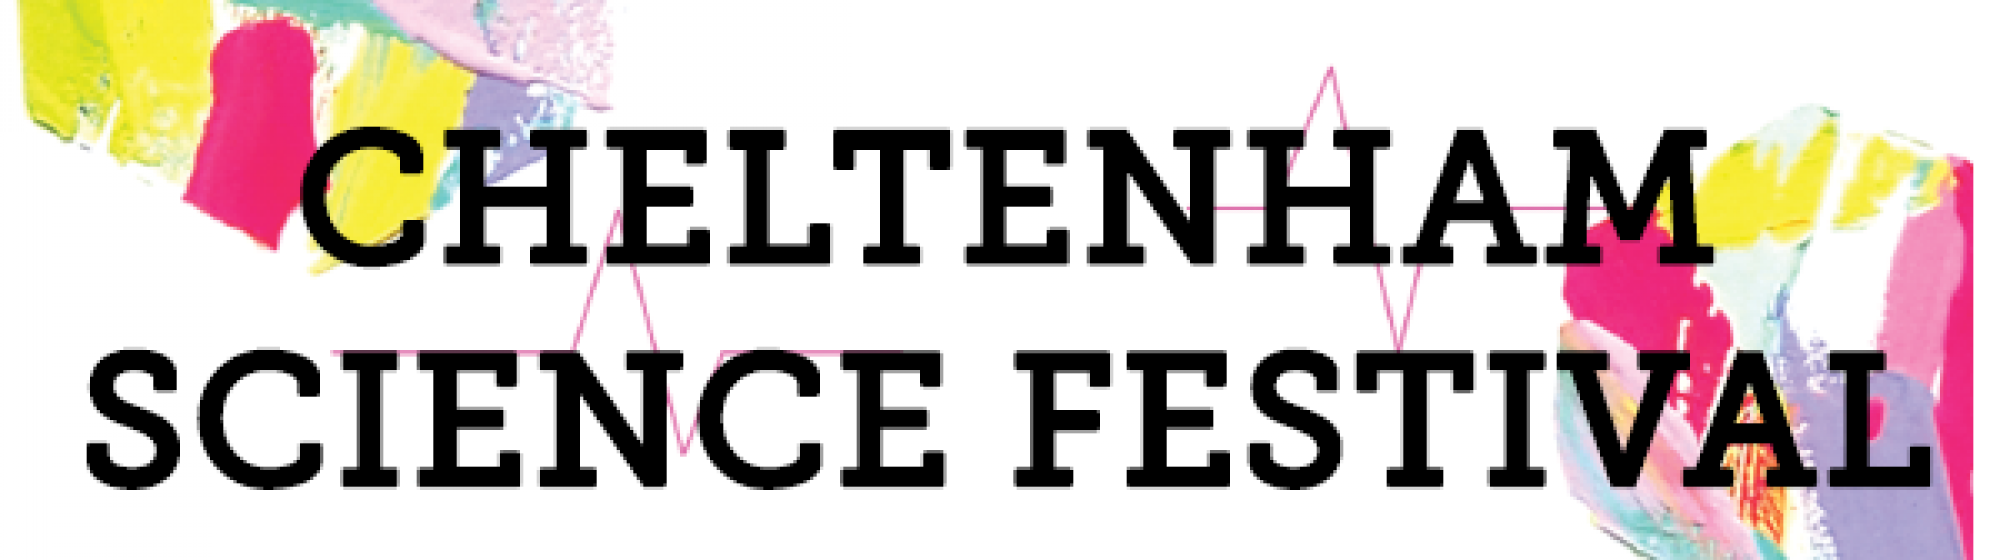 Cheltenham Science Festival June 2019